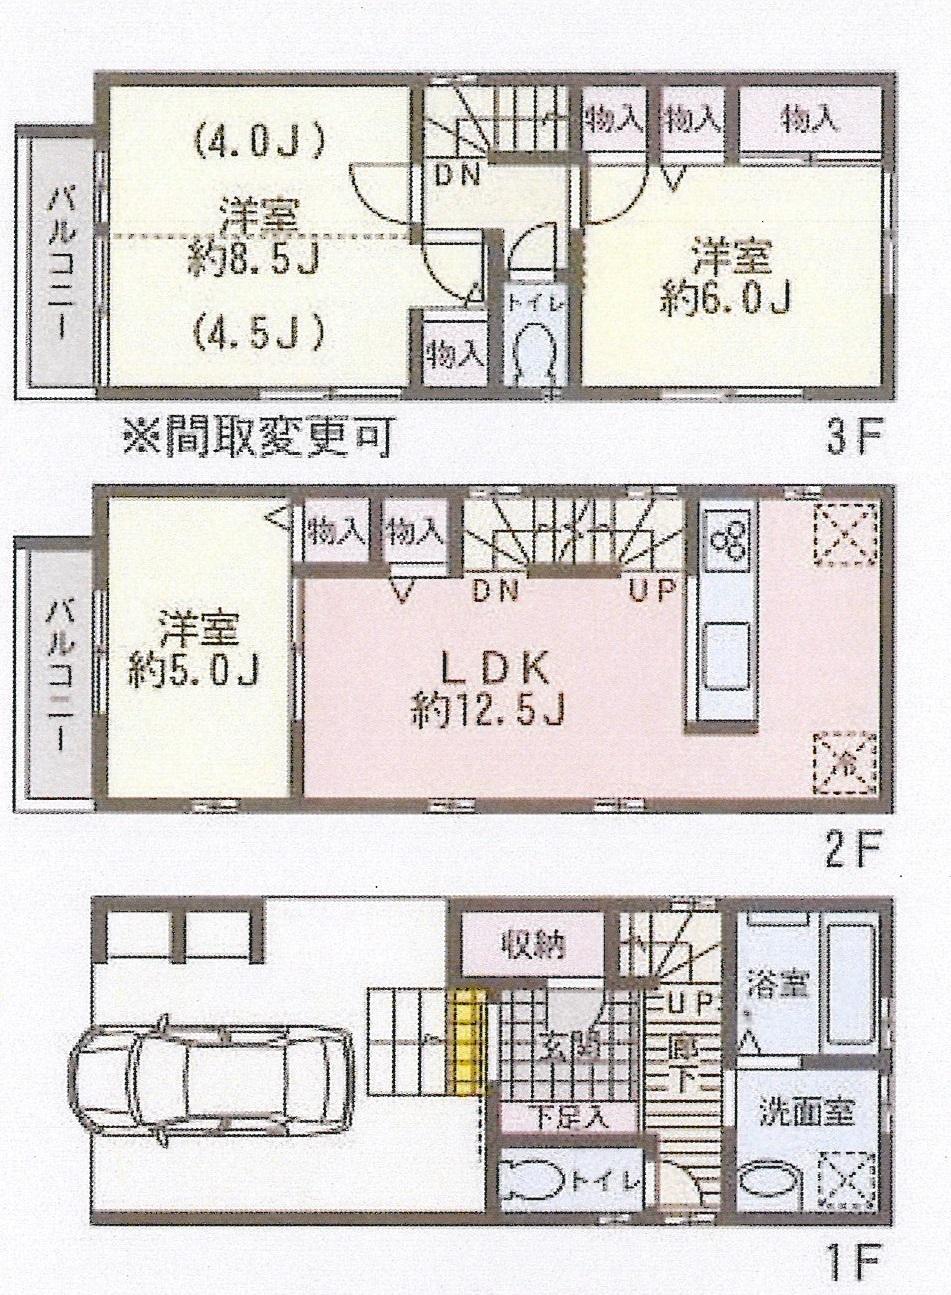 Floor plan. (A Building), Price 33,800,000 yen, 3LDK, Land area 55.11 sq m , Building area 102.16 sq m